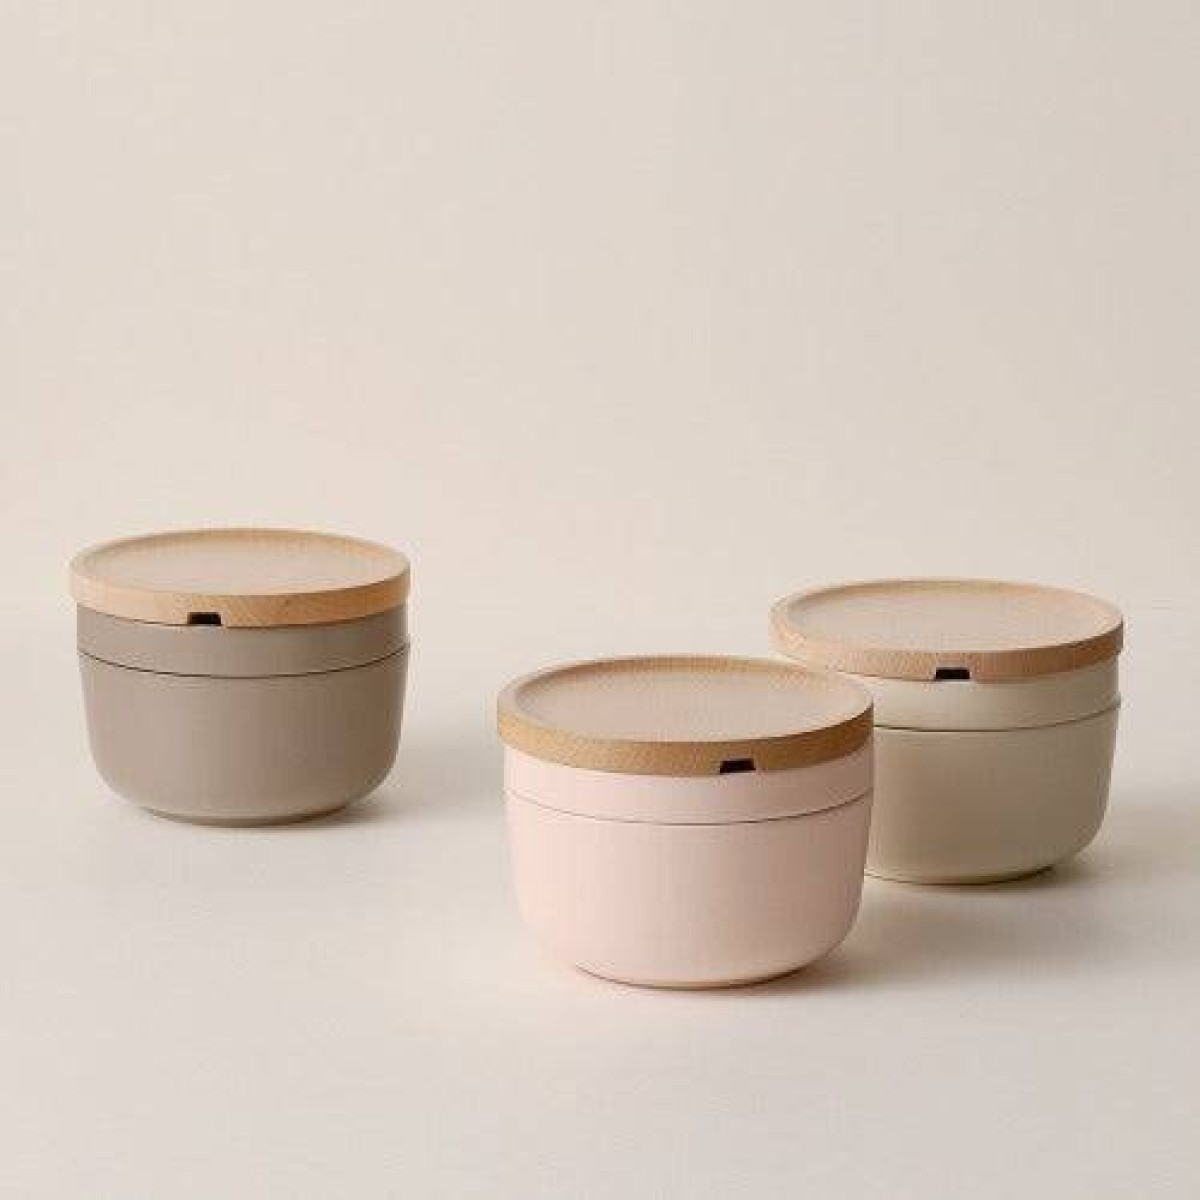 Modori Ceramic Modular Dish Set